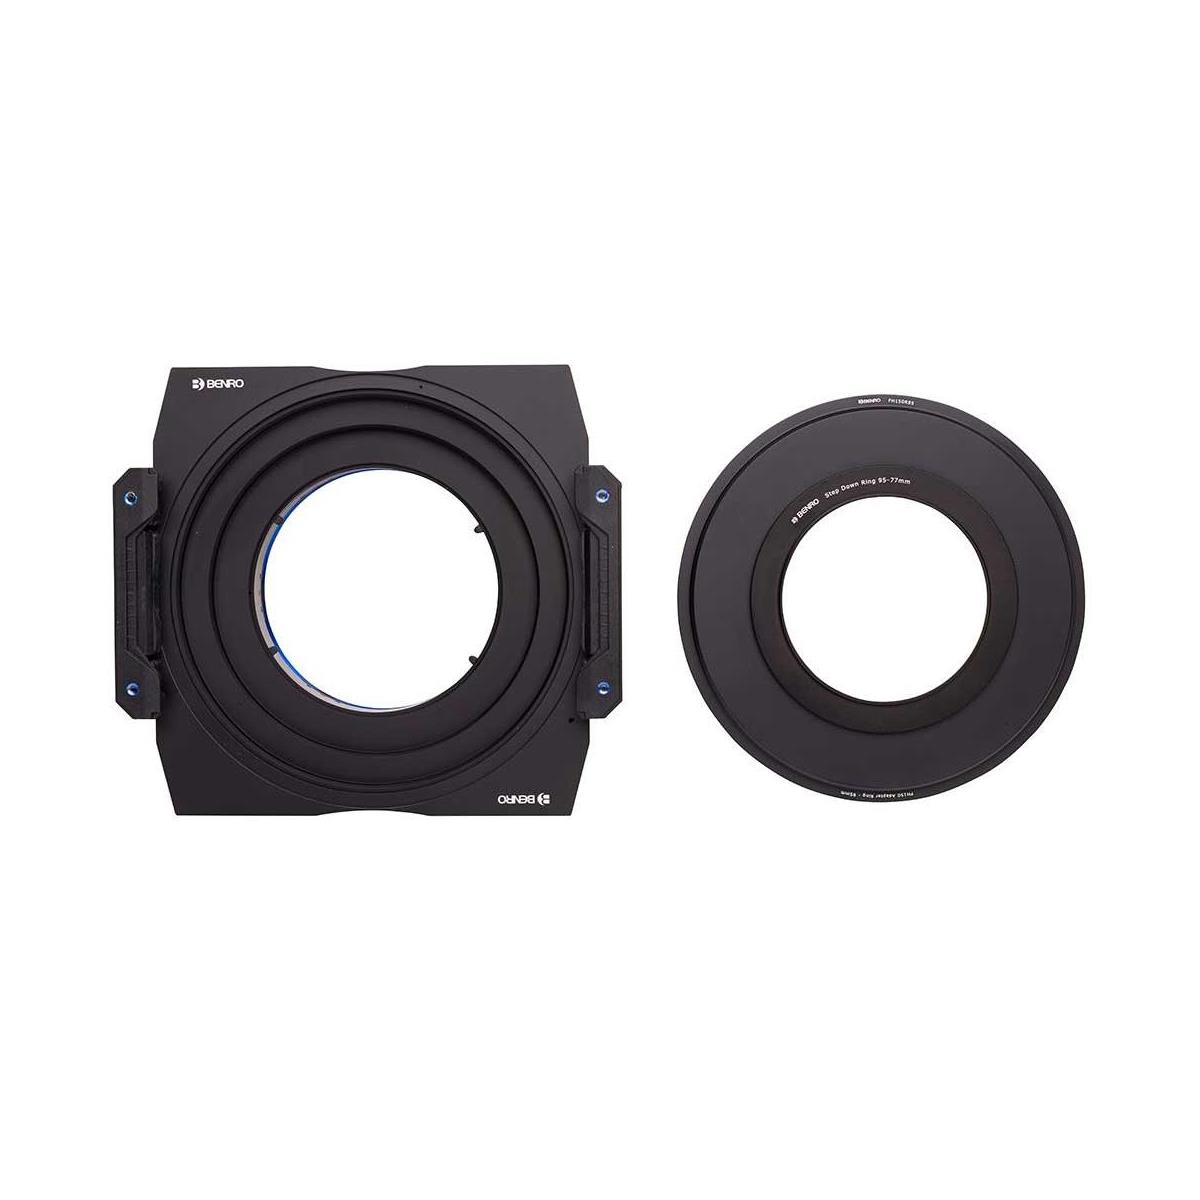 Image of Benro Master Series 150mm Filter Holder Set for Sigma 12-24mm EX DG HSM II Lens